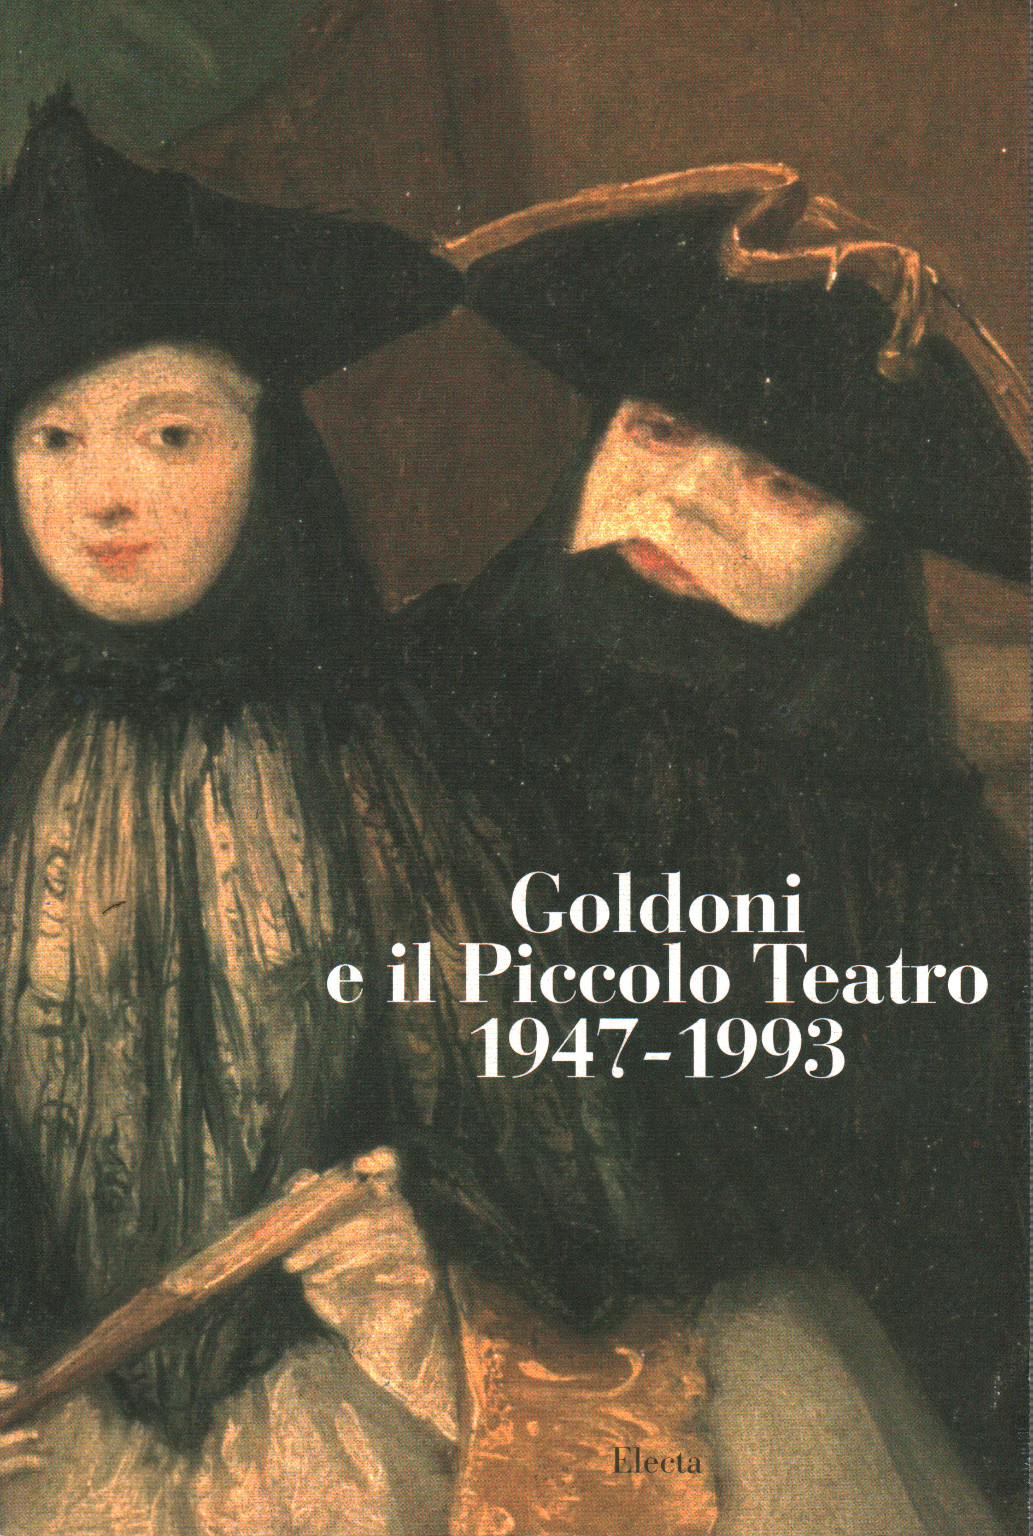 Goldoni und das Kleine Theater 1947-1993, s.zu.